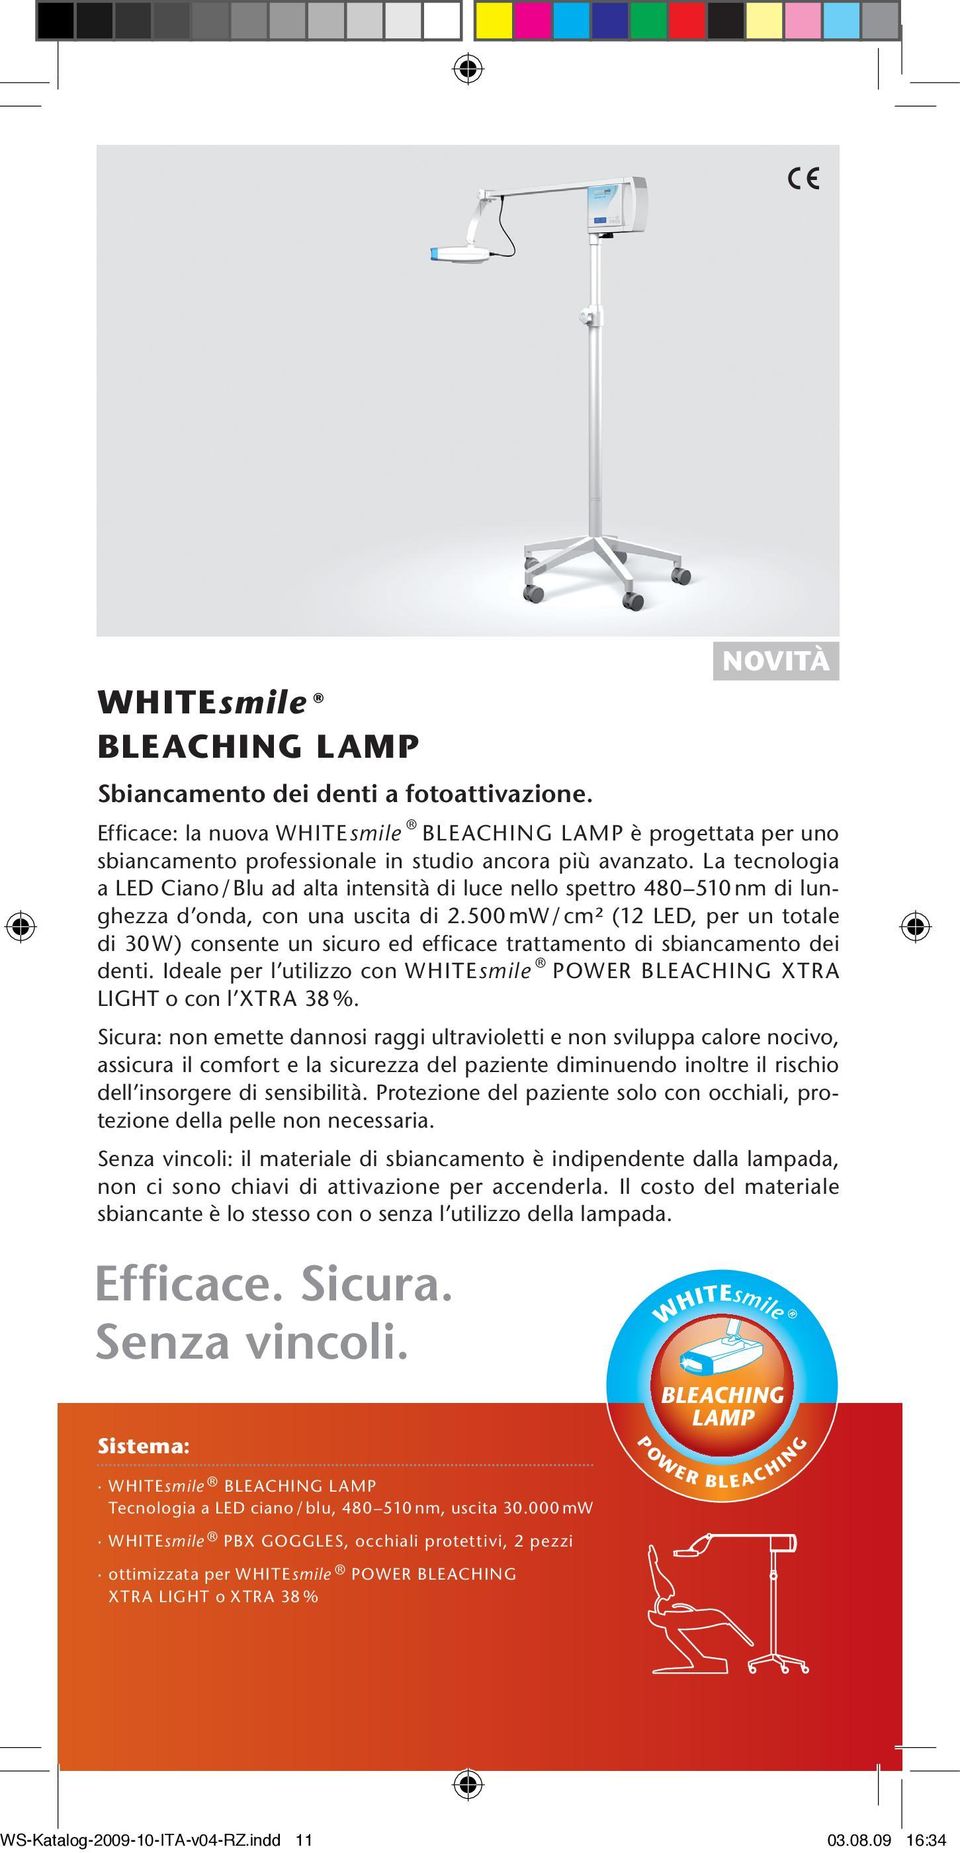 500 mw / cm² (12 LED, per un totale di 30 W) consente un sicuro ed efficace trattamento di sbiancamento dei denti. Ideale per l utilizzo con POWER BLEACHING XTRA LIGHT o con l XTRA 38 %.